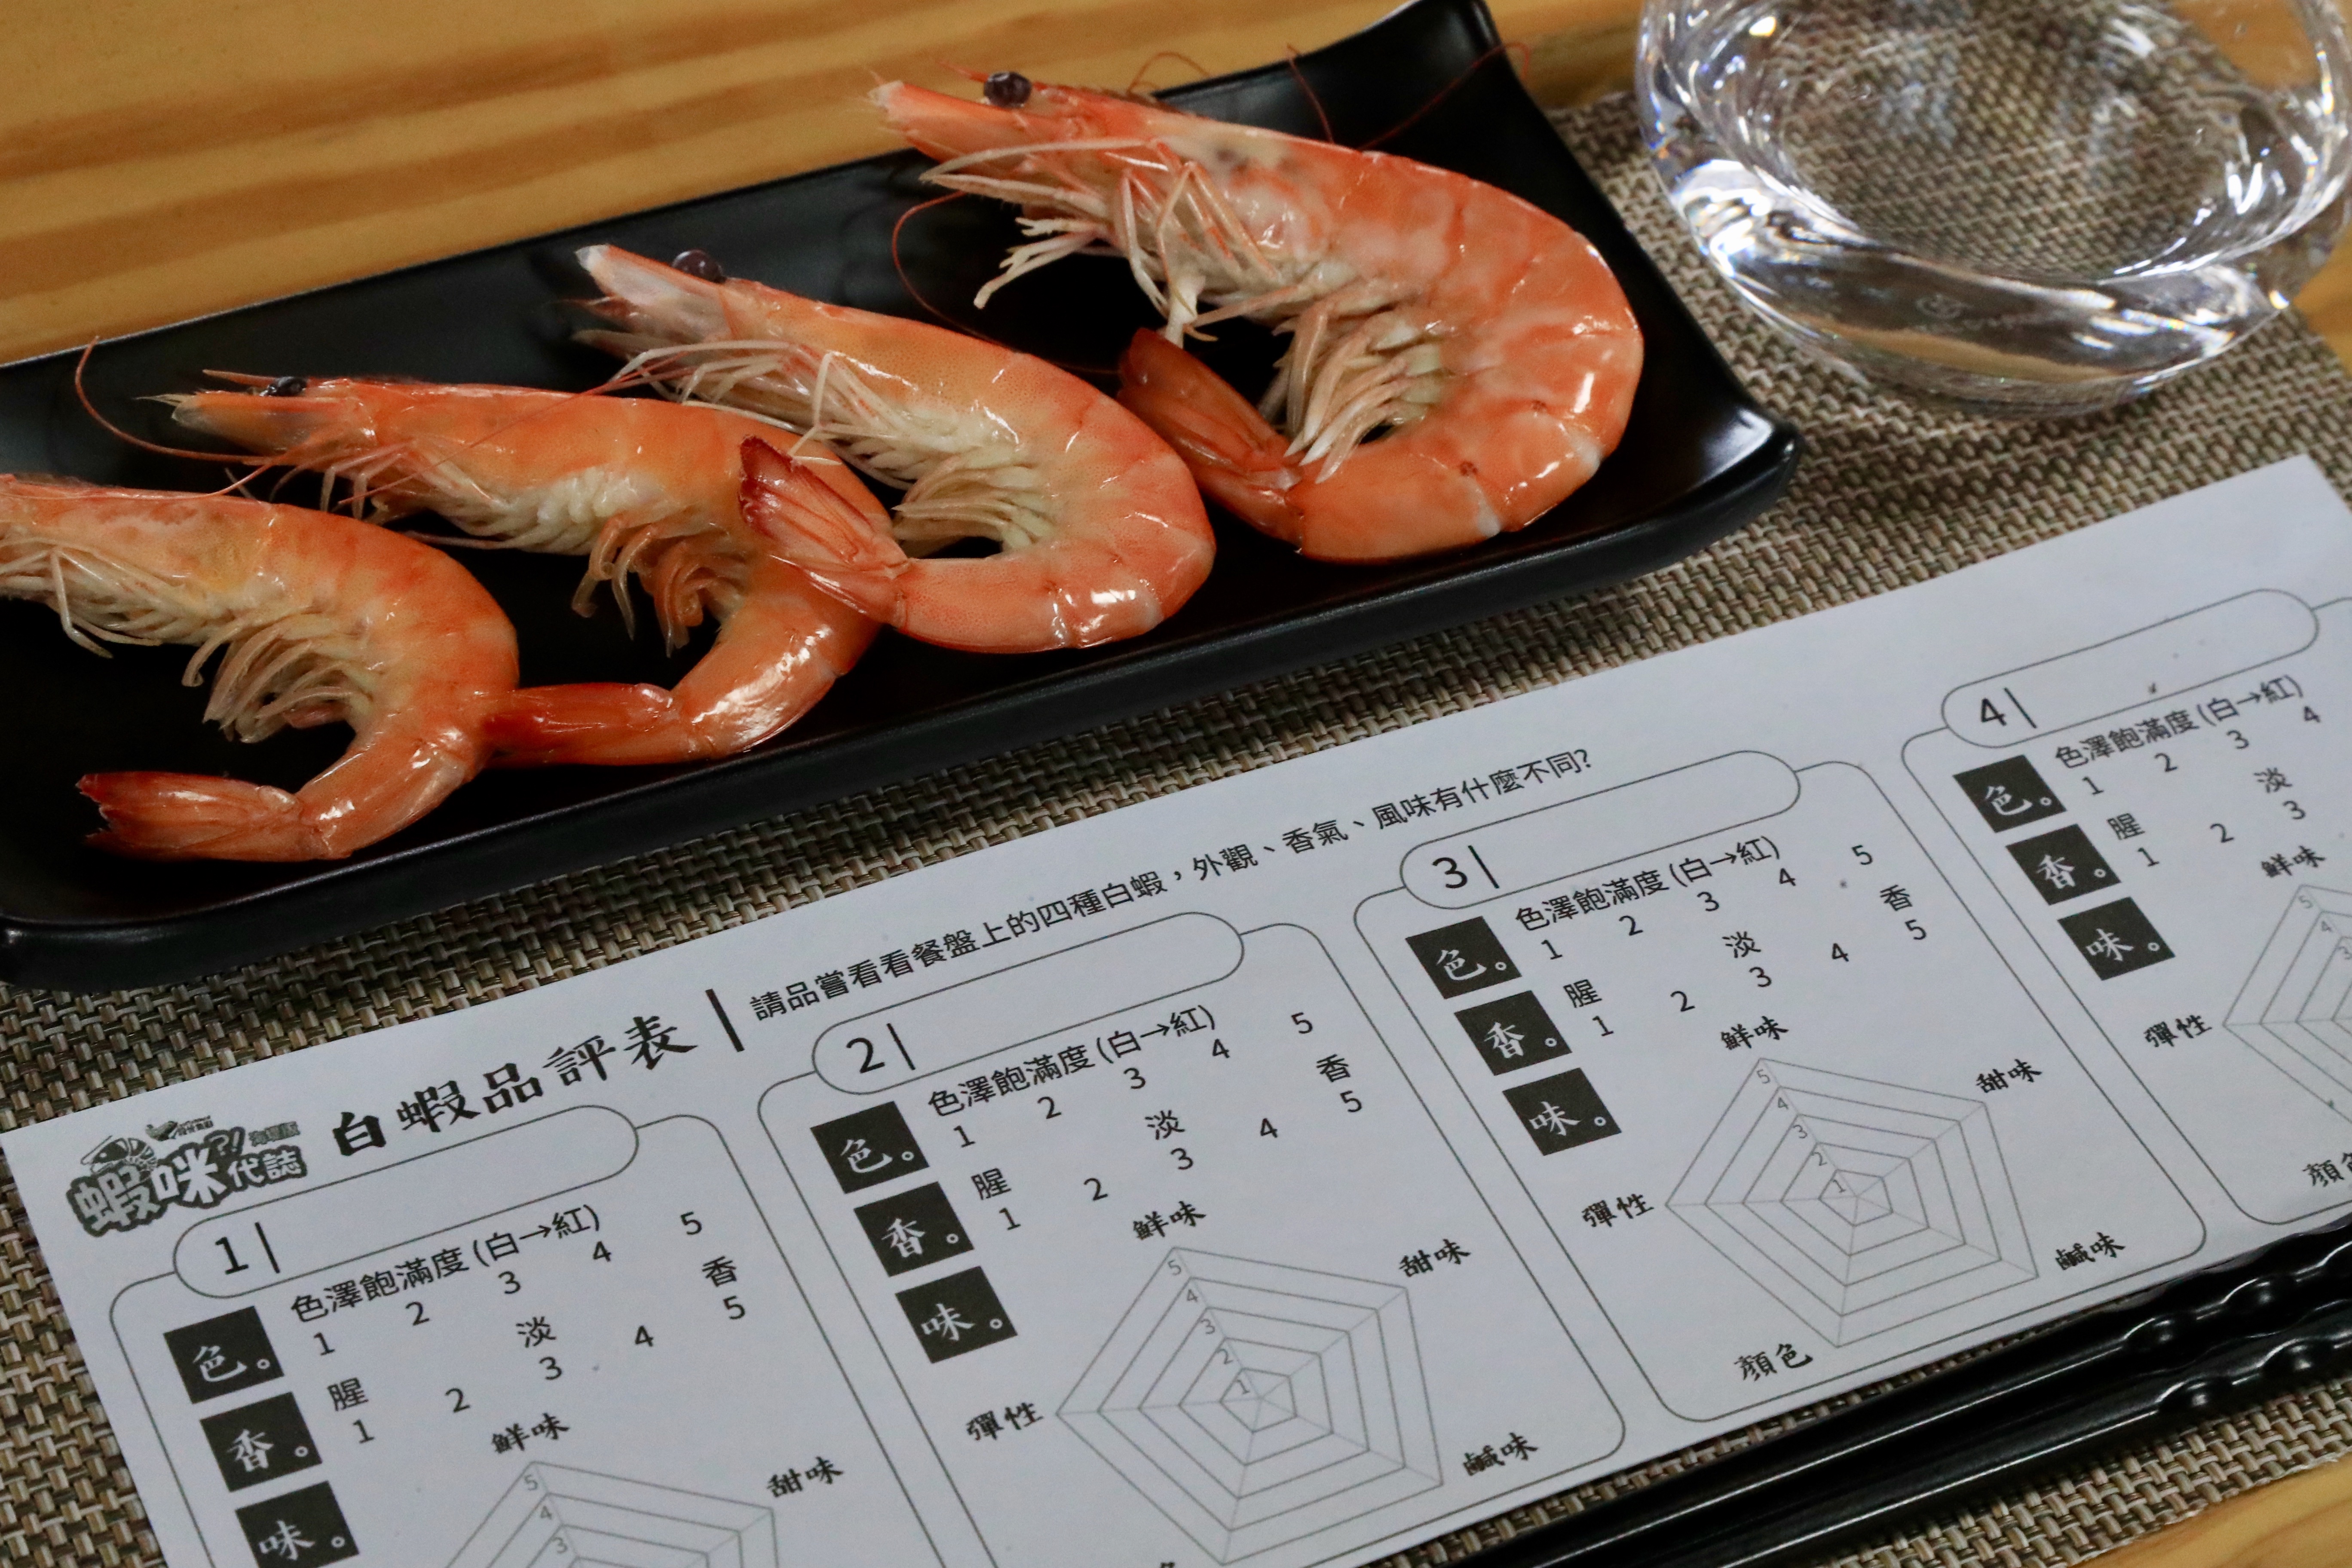 股份魚鄉「蝦咪代誌」有多樣趣味體驗帶領遊客認識養殖白蝦，例如品嚐不同養殖環境出產的蝦子滋味差異。